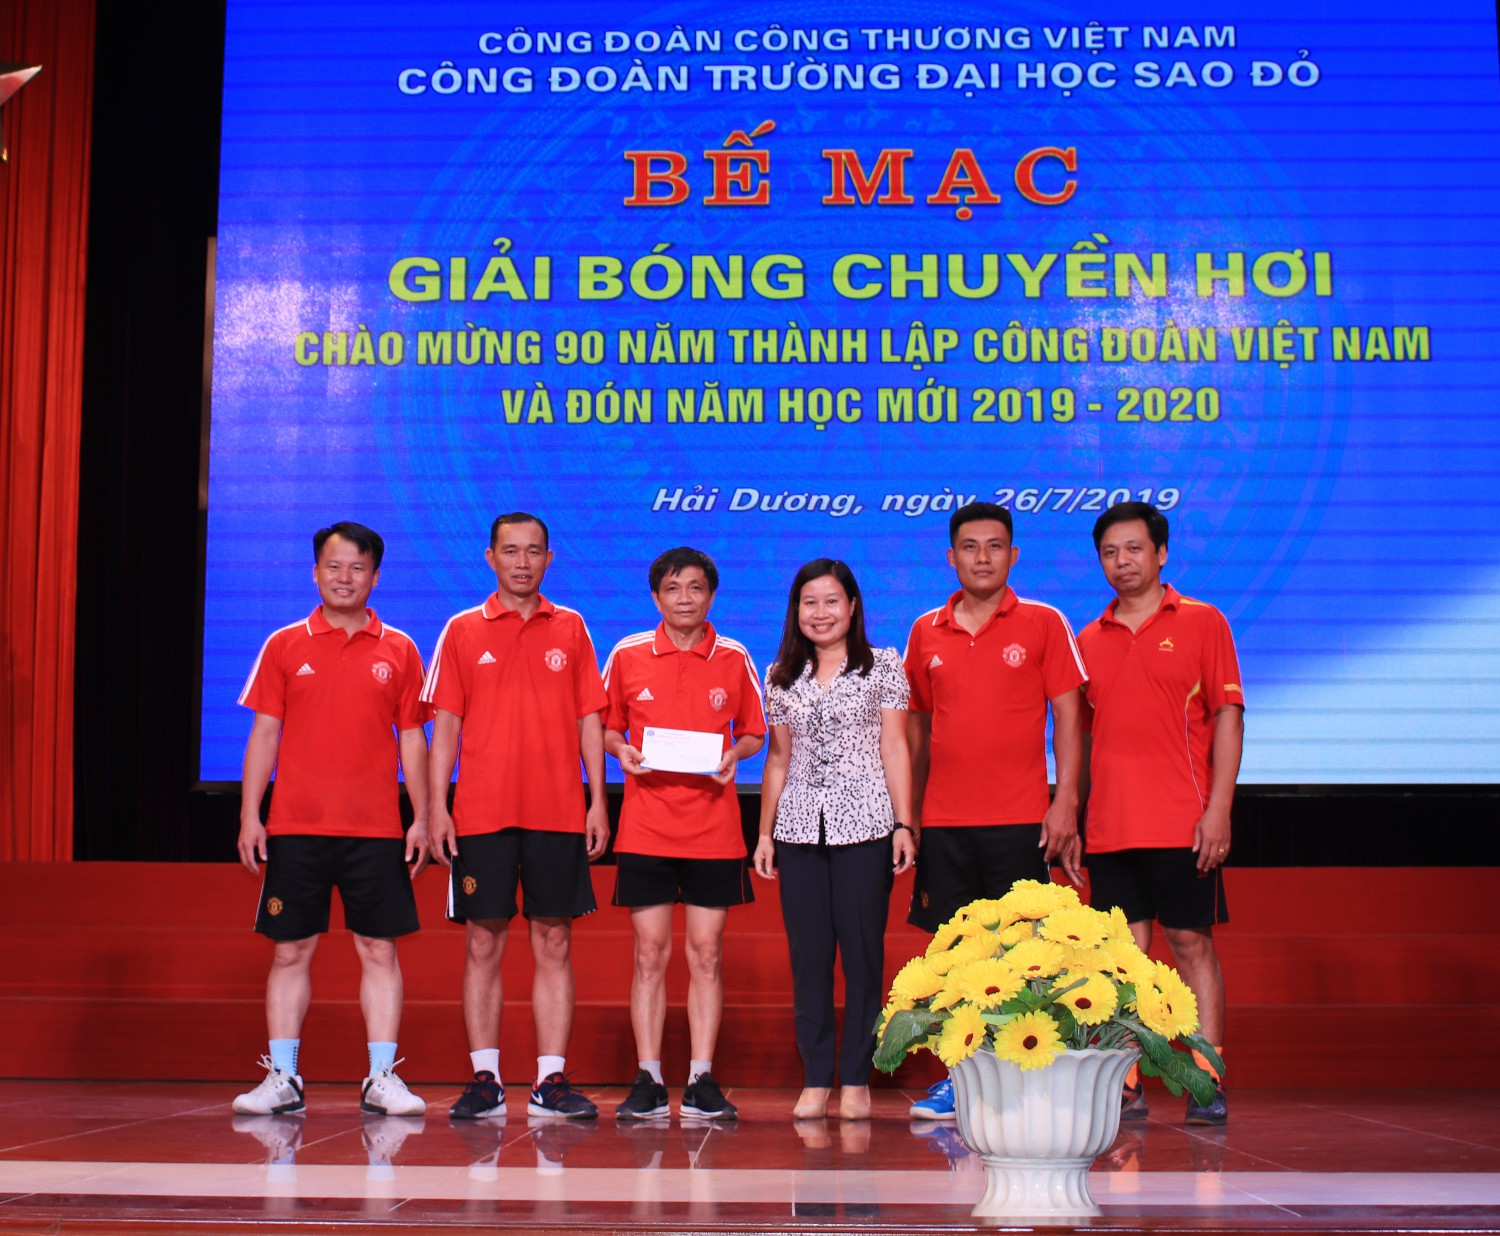 Bế mạc giải bóng chuyền hơi chào mừng 90 năm thành lập  Công đoàn Việt Nam và đón năm học mới 2019-2020